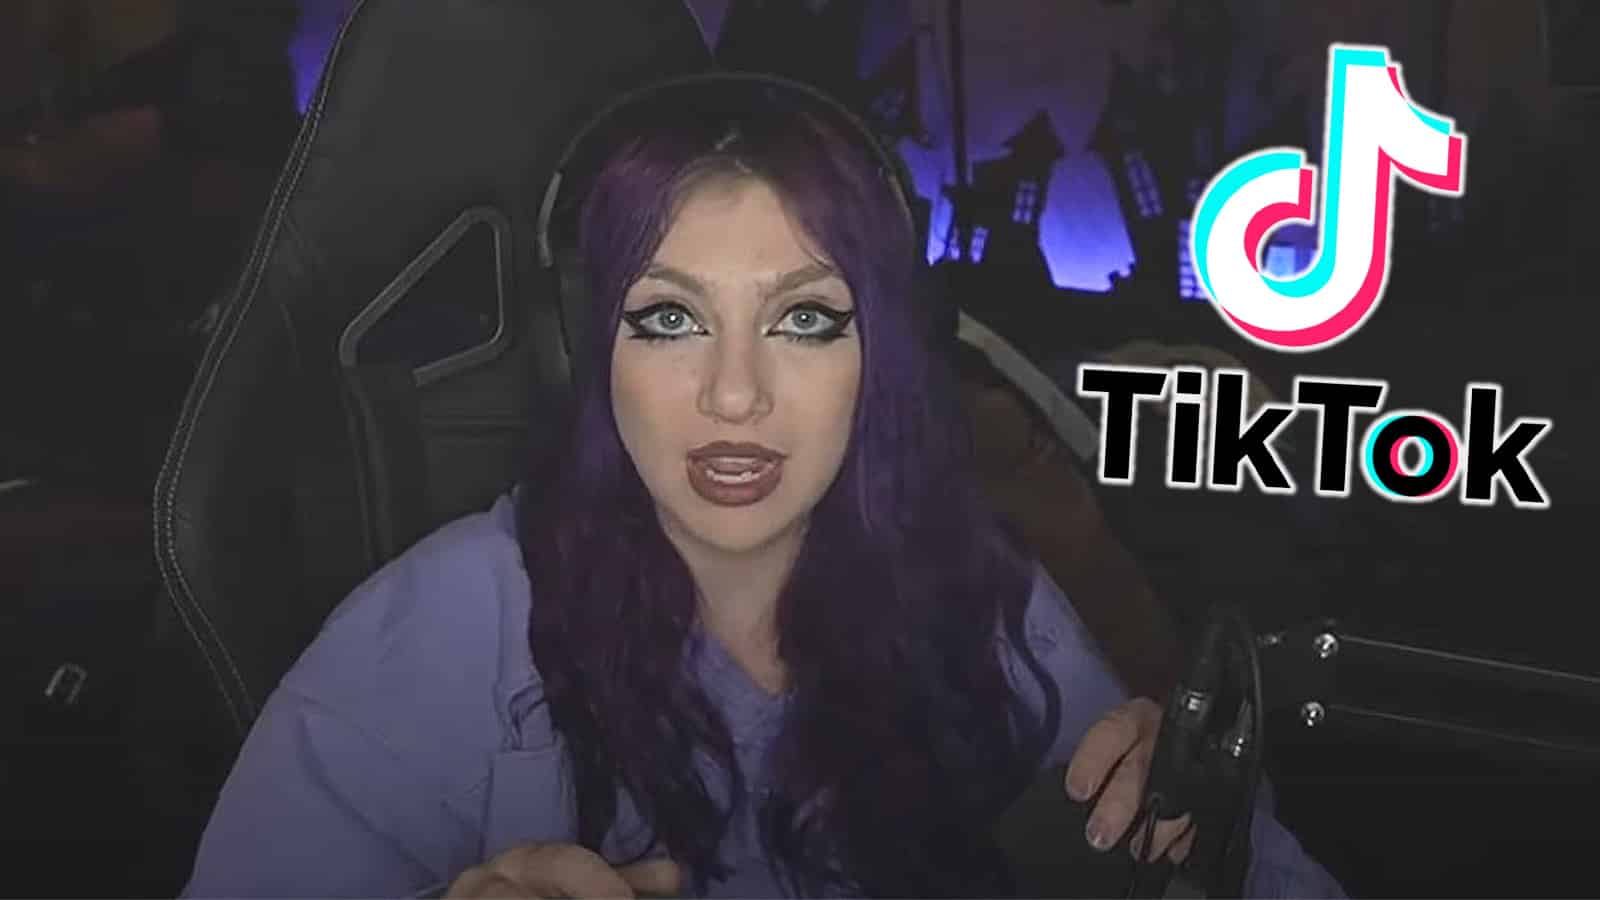 Irish streamer JustaMinx returns to Twitch after ban, pretends to